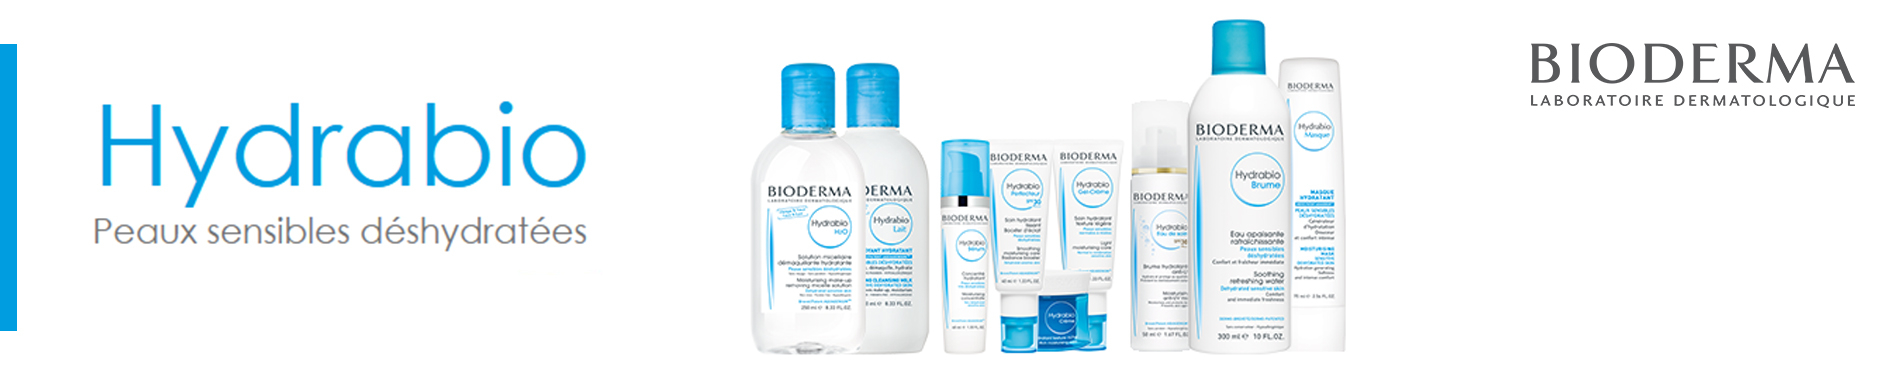 La gamme Hydrabio pour peaux sensibles déshydratées de Bioderma